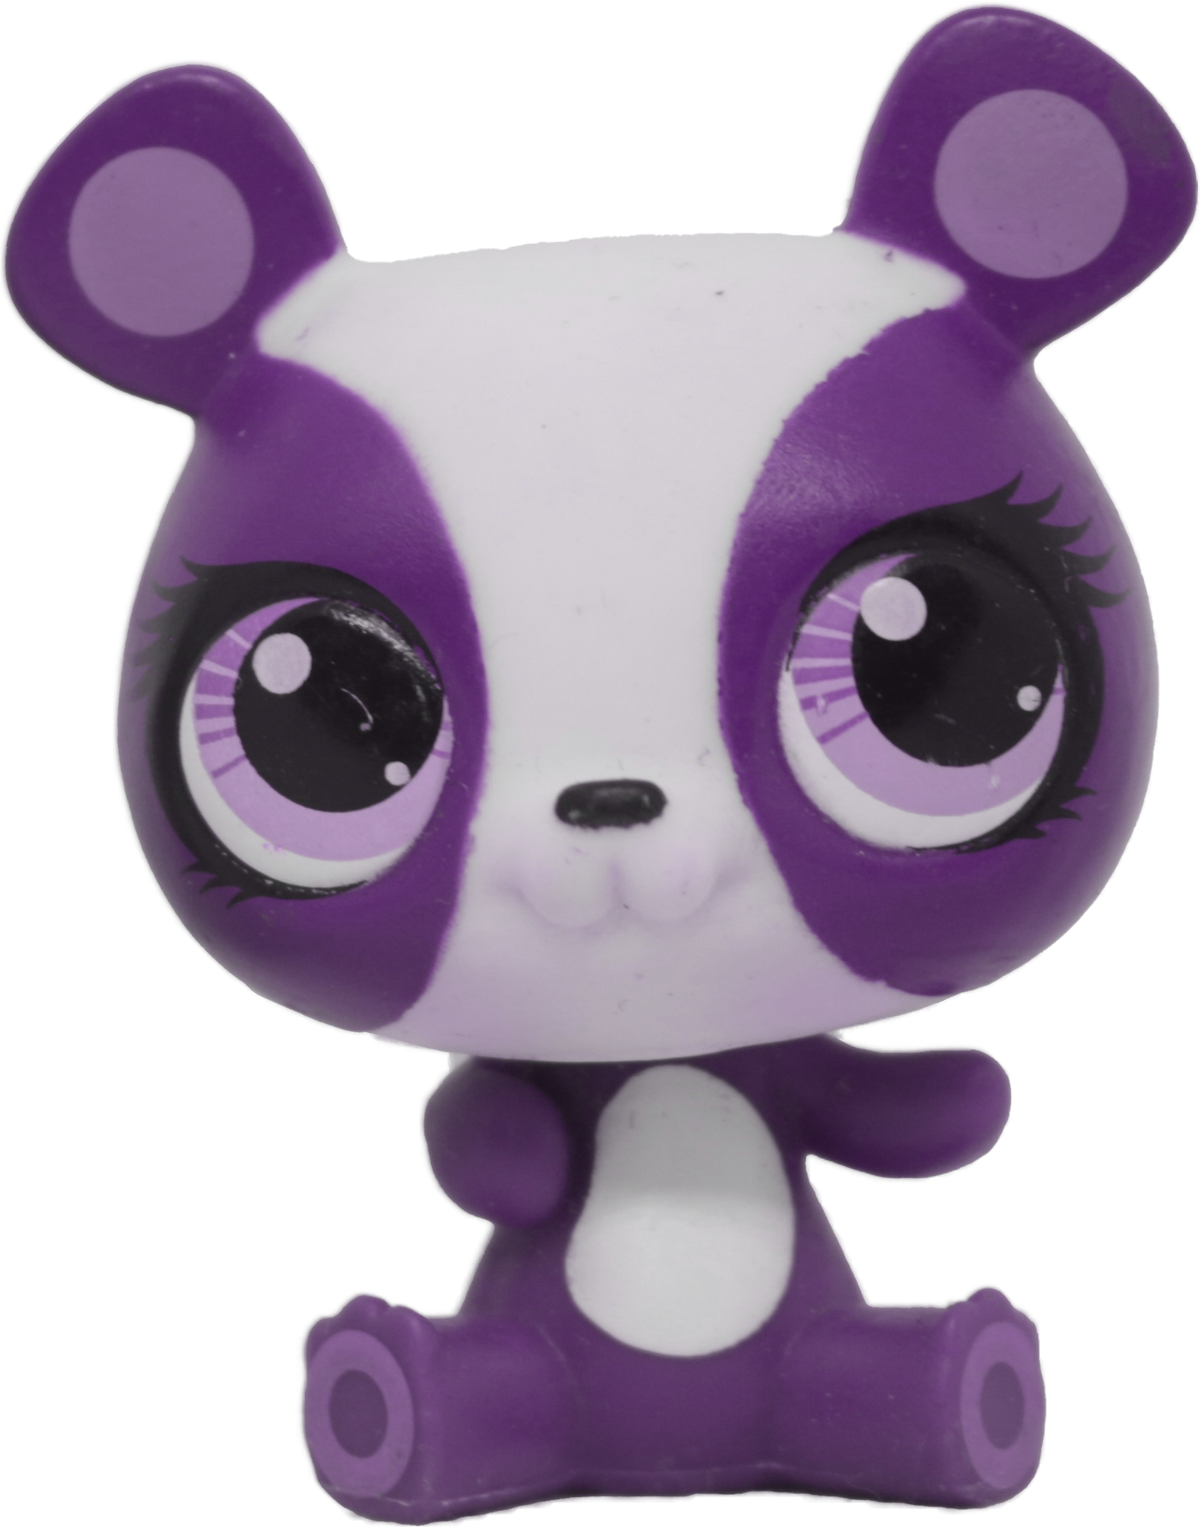 Custom Base: G3 Panda